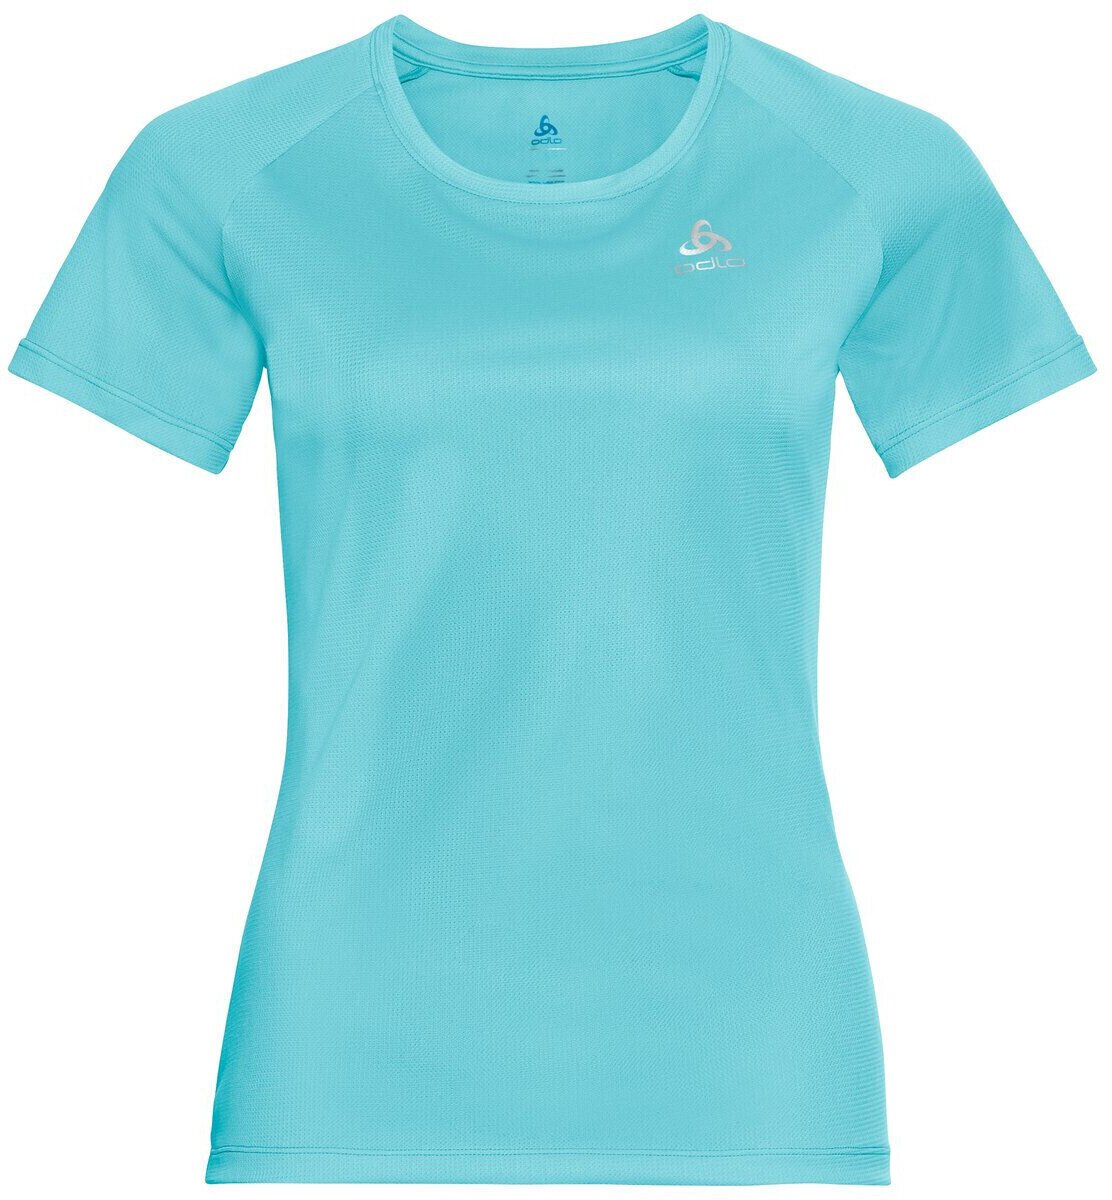 Chemise de course à manches courtes
 Odlo Element Light T-Shirt Blue Radiance XS Chemise de course à manches courtes